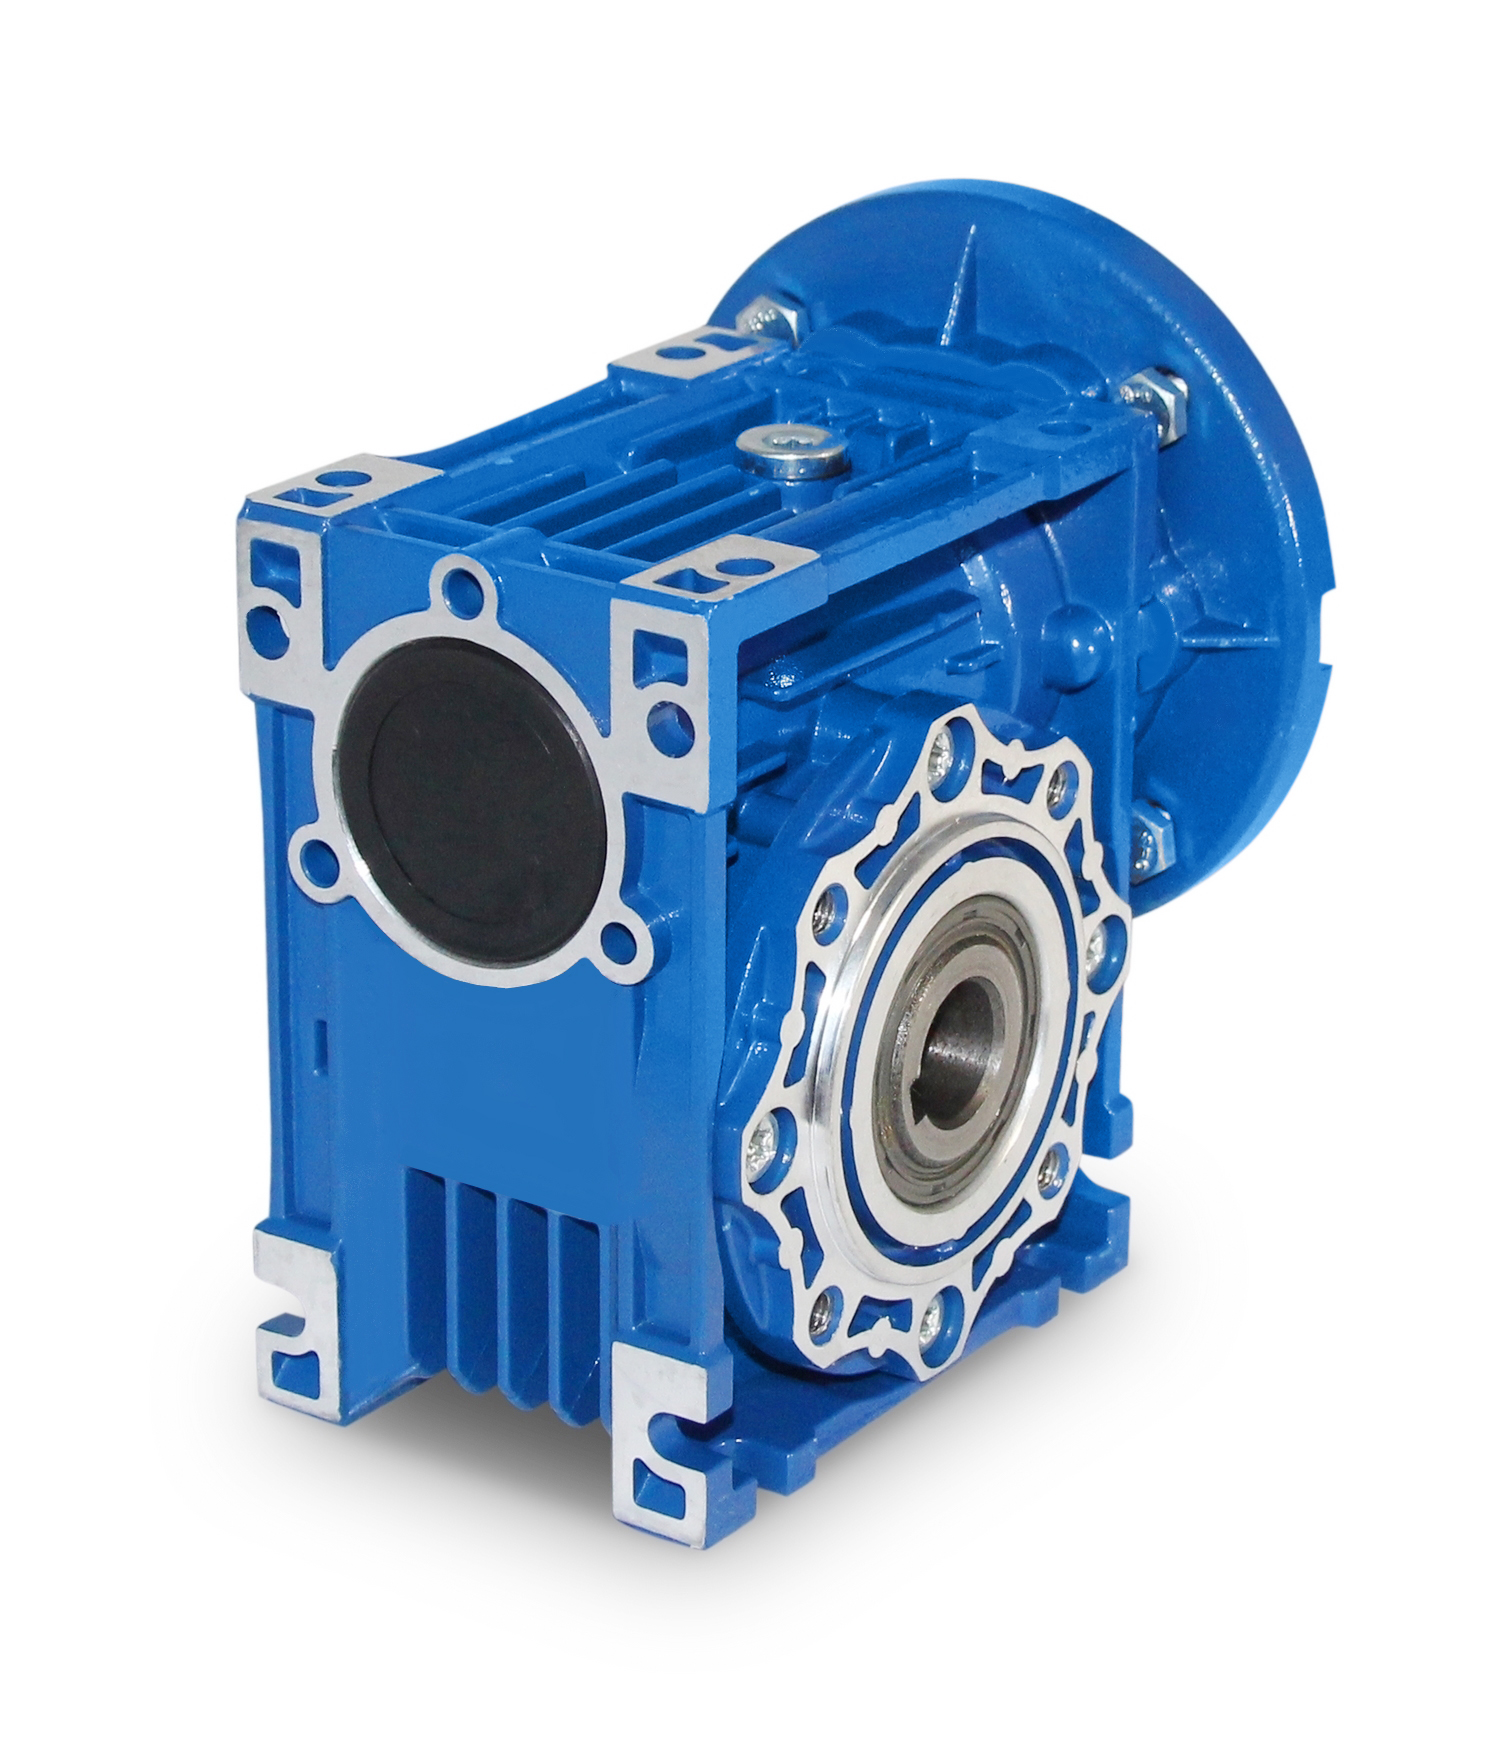 https://www.js-technik.de/media/f5/17/e6/1672918125/1-js-schneckengetriebe-winkelgetriebe-bg-40-helical-worm-reducer-gearbox.jpg